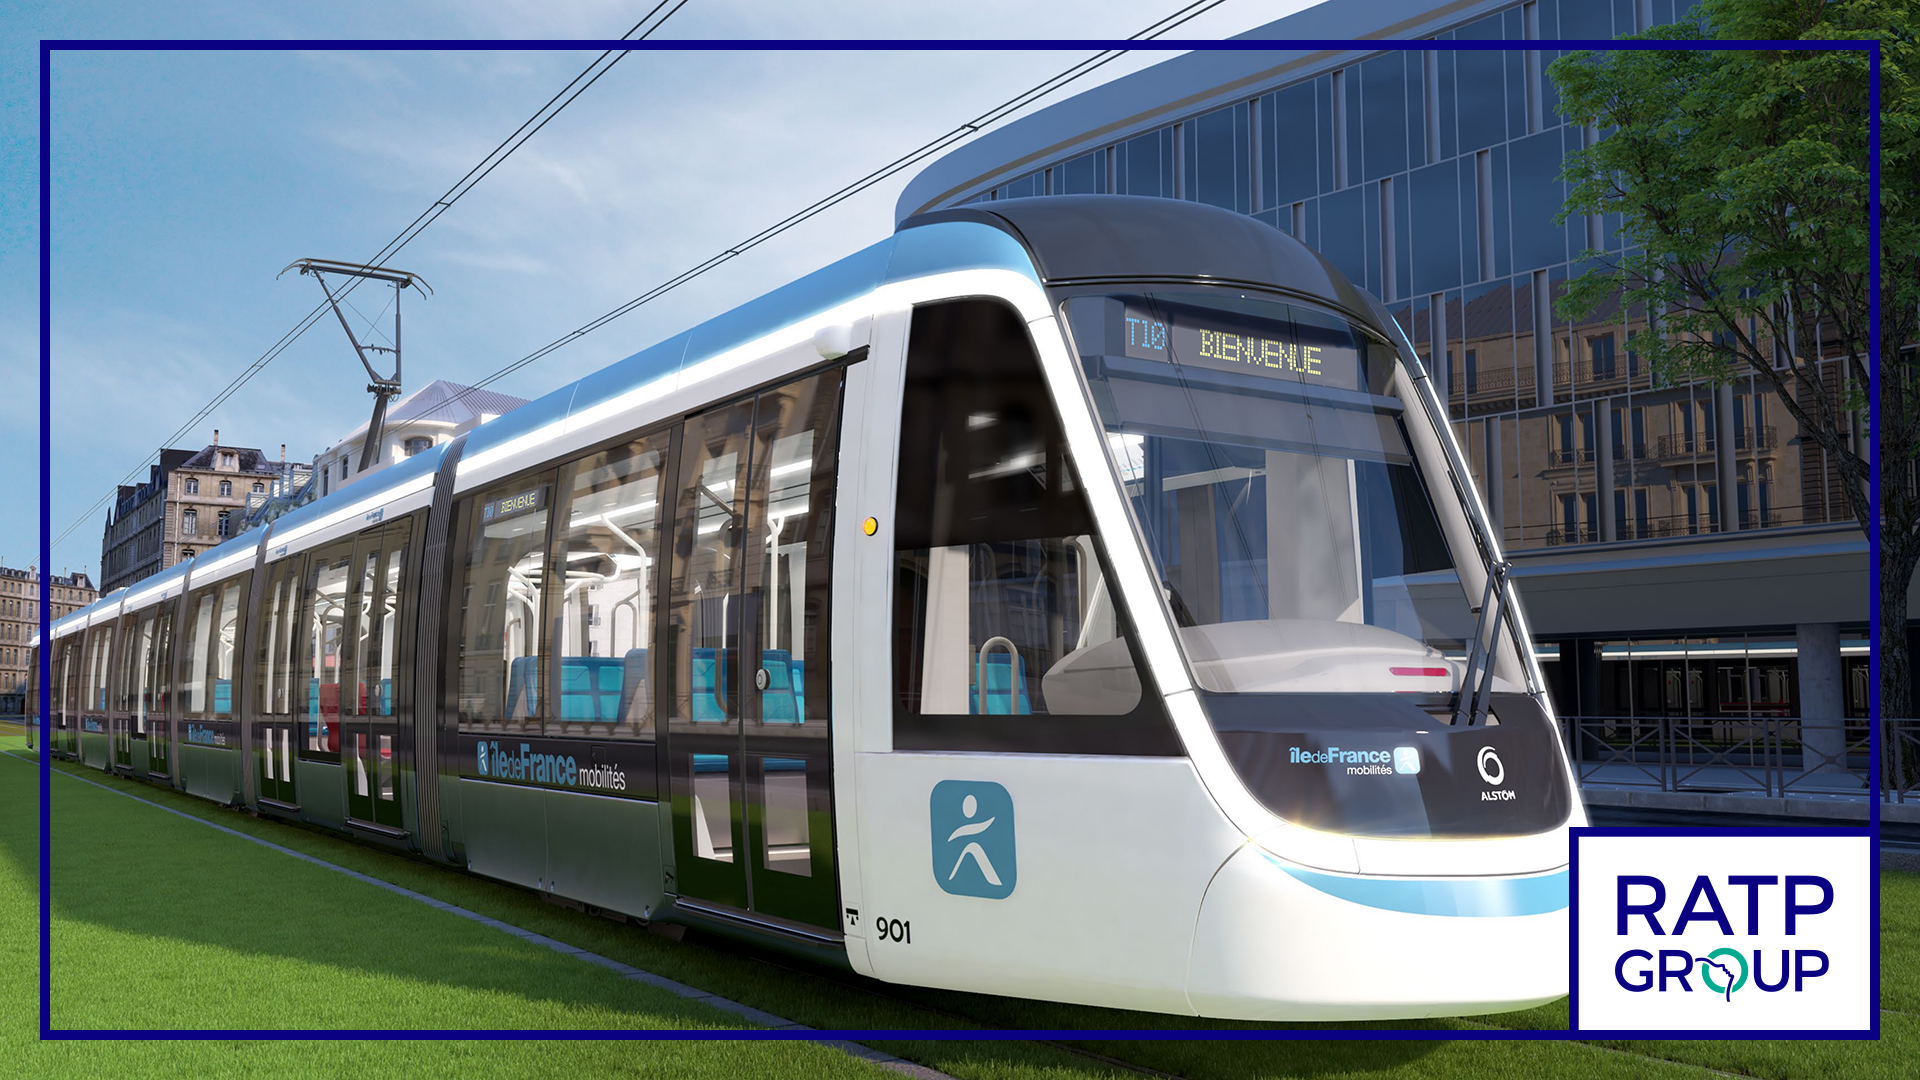 Visuel En quoi consiste l’appel d’offres remporté par le Groupe RATP pour l’exploitation du tramway T10 ?